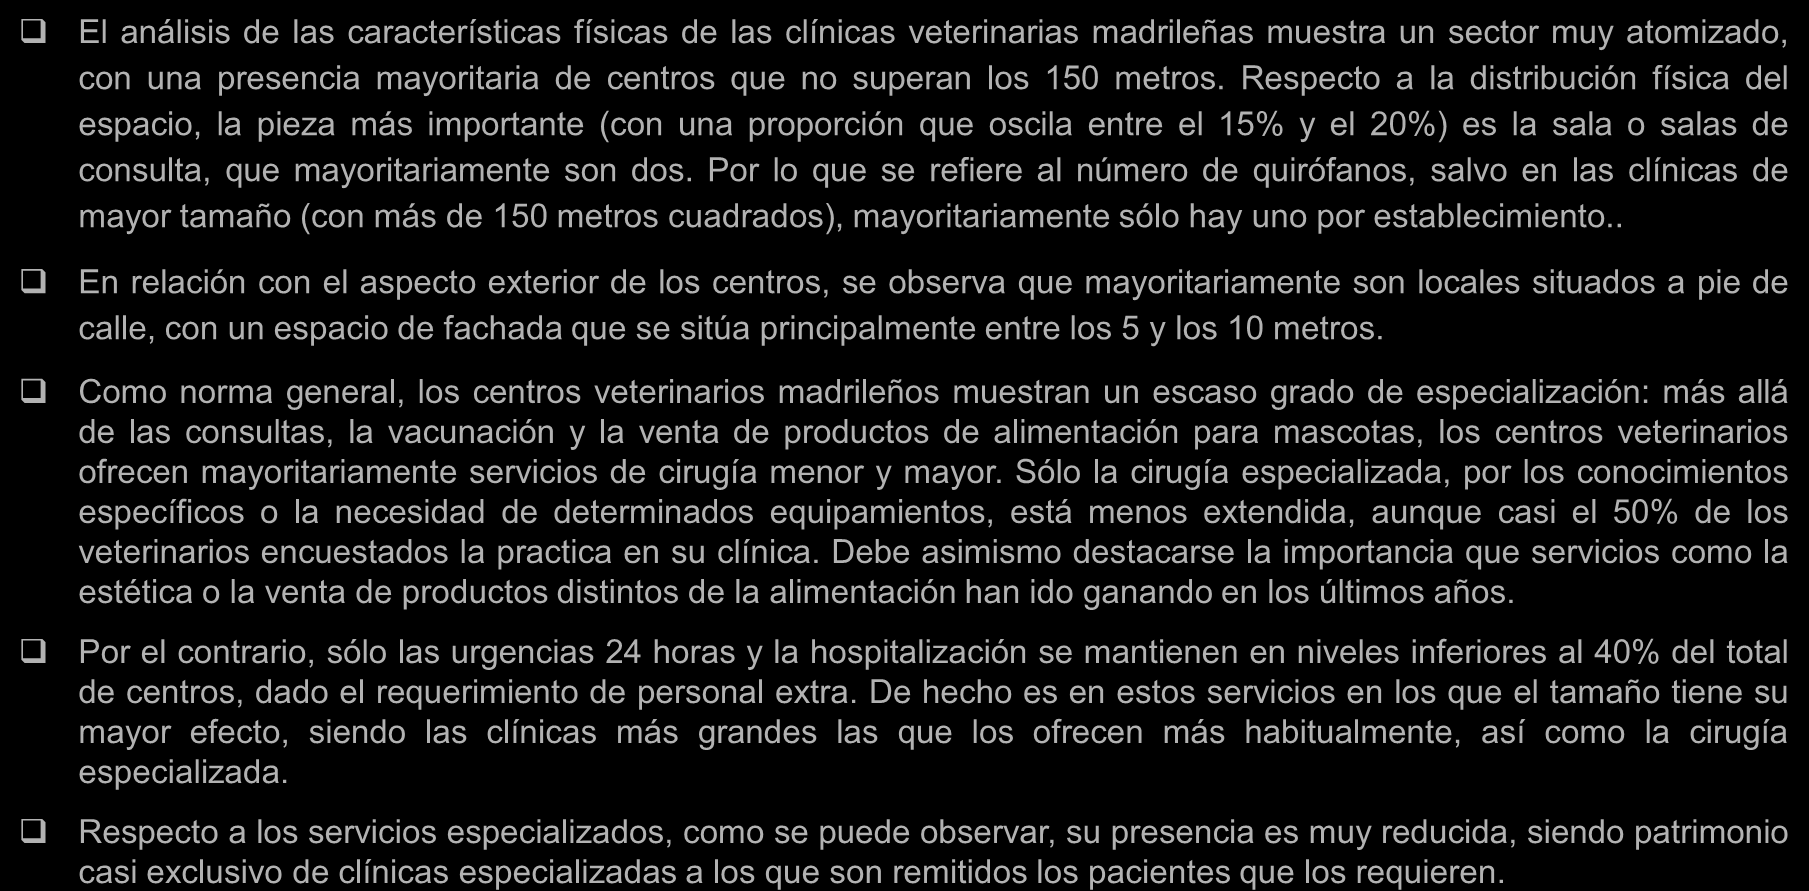 Caracterización de las Clínicas Veterinarias Madrileñas: Descripción de los centros veterinarios madrileños DESCRIPCIÓN DE LOS CENTROS VETERINARIOS MADRILEÑOS El análisis de las características